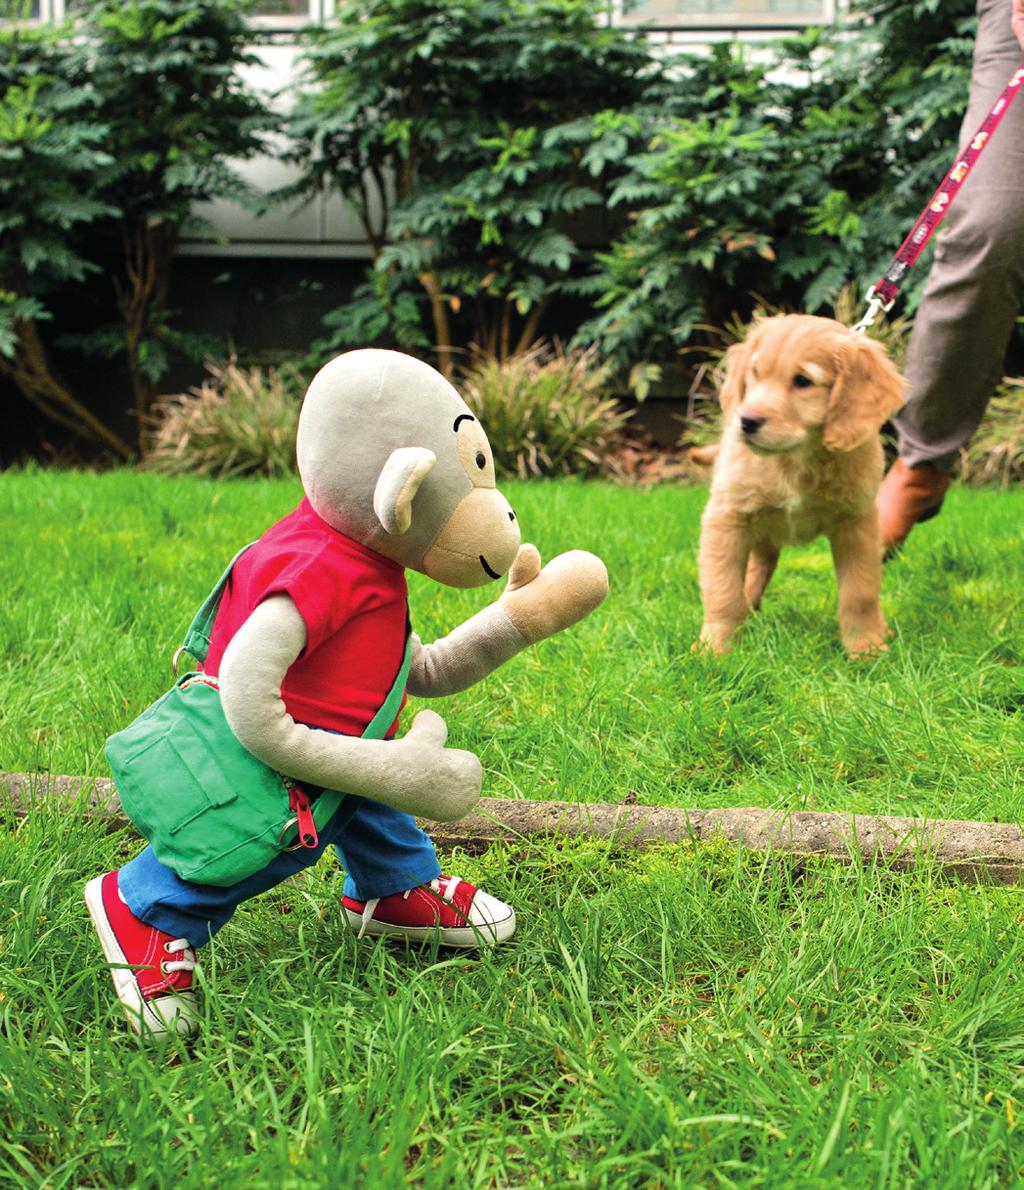 AAPJE PIPPO EN DE HOND Aapje Pippo komt in het park een jonge hond tegen. De twee zijn nieuwsgierig naar elkaar en willen spelen. Aapje Pippo gooit een bal weg. De hond haalt hem op en.